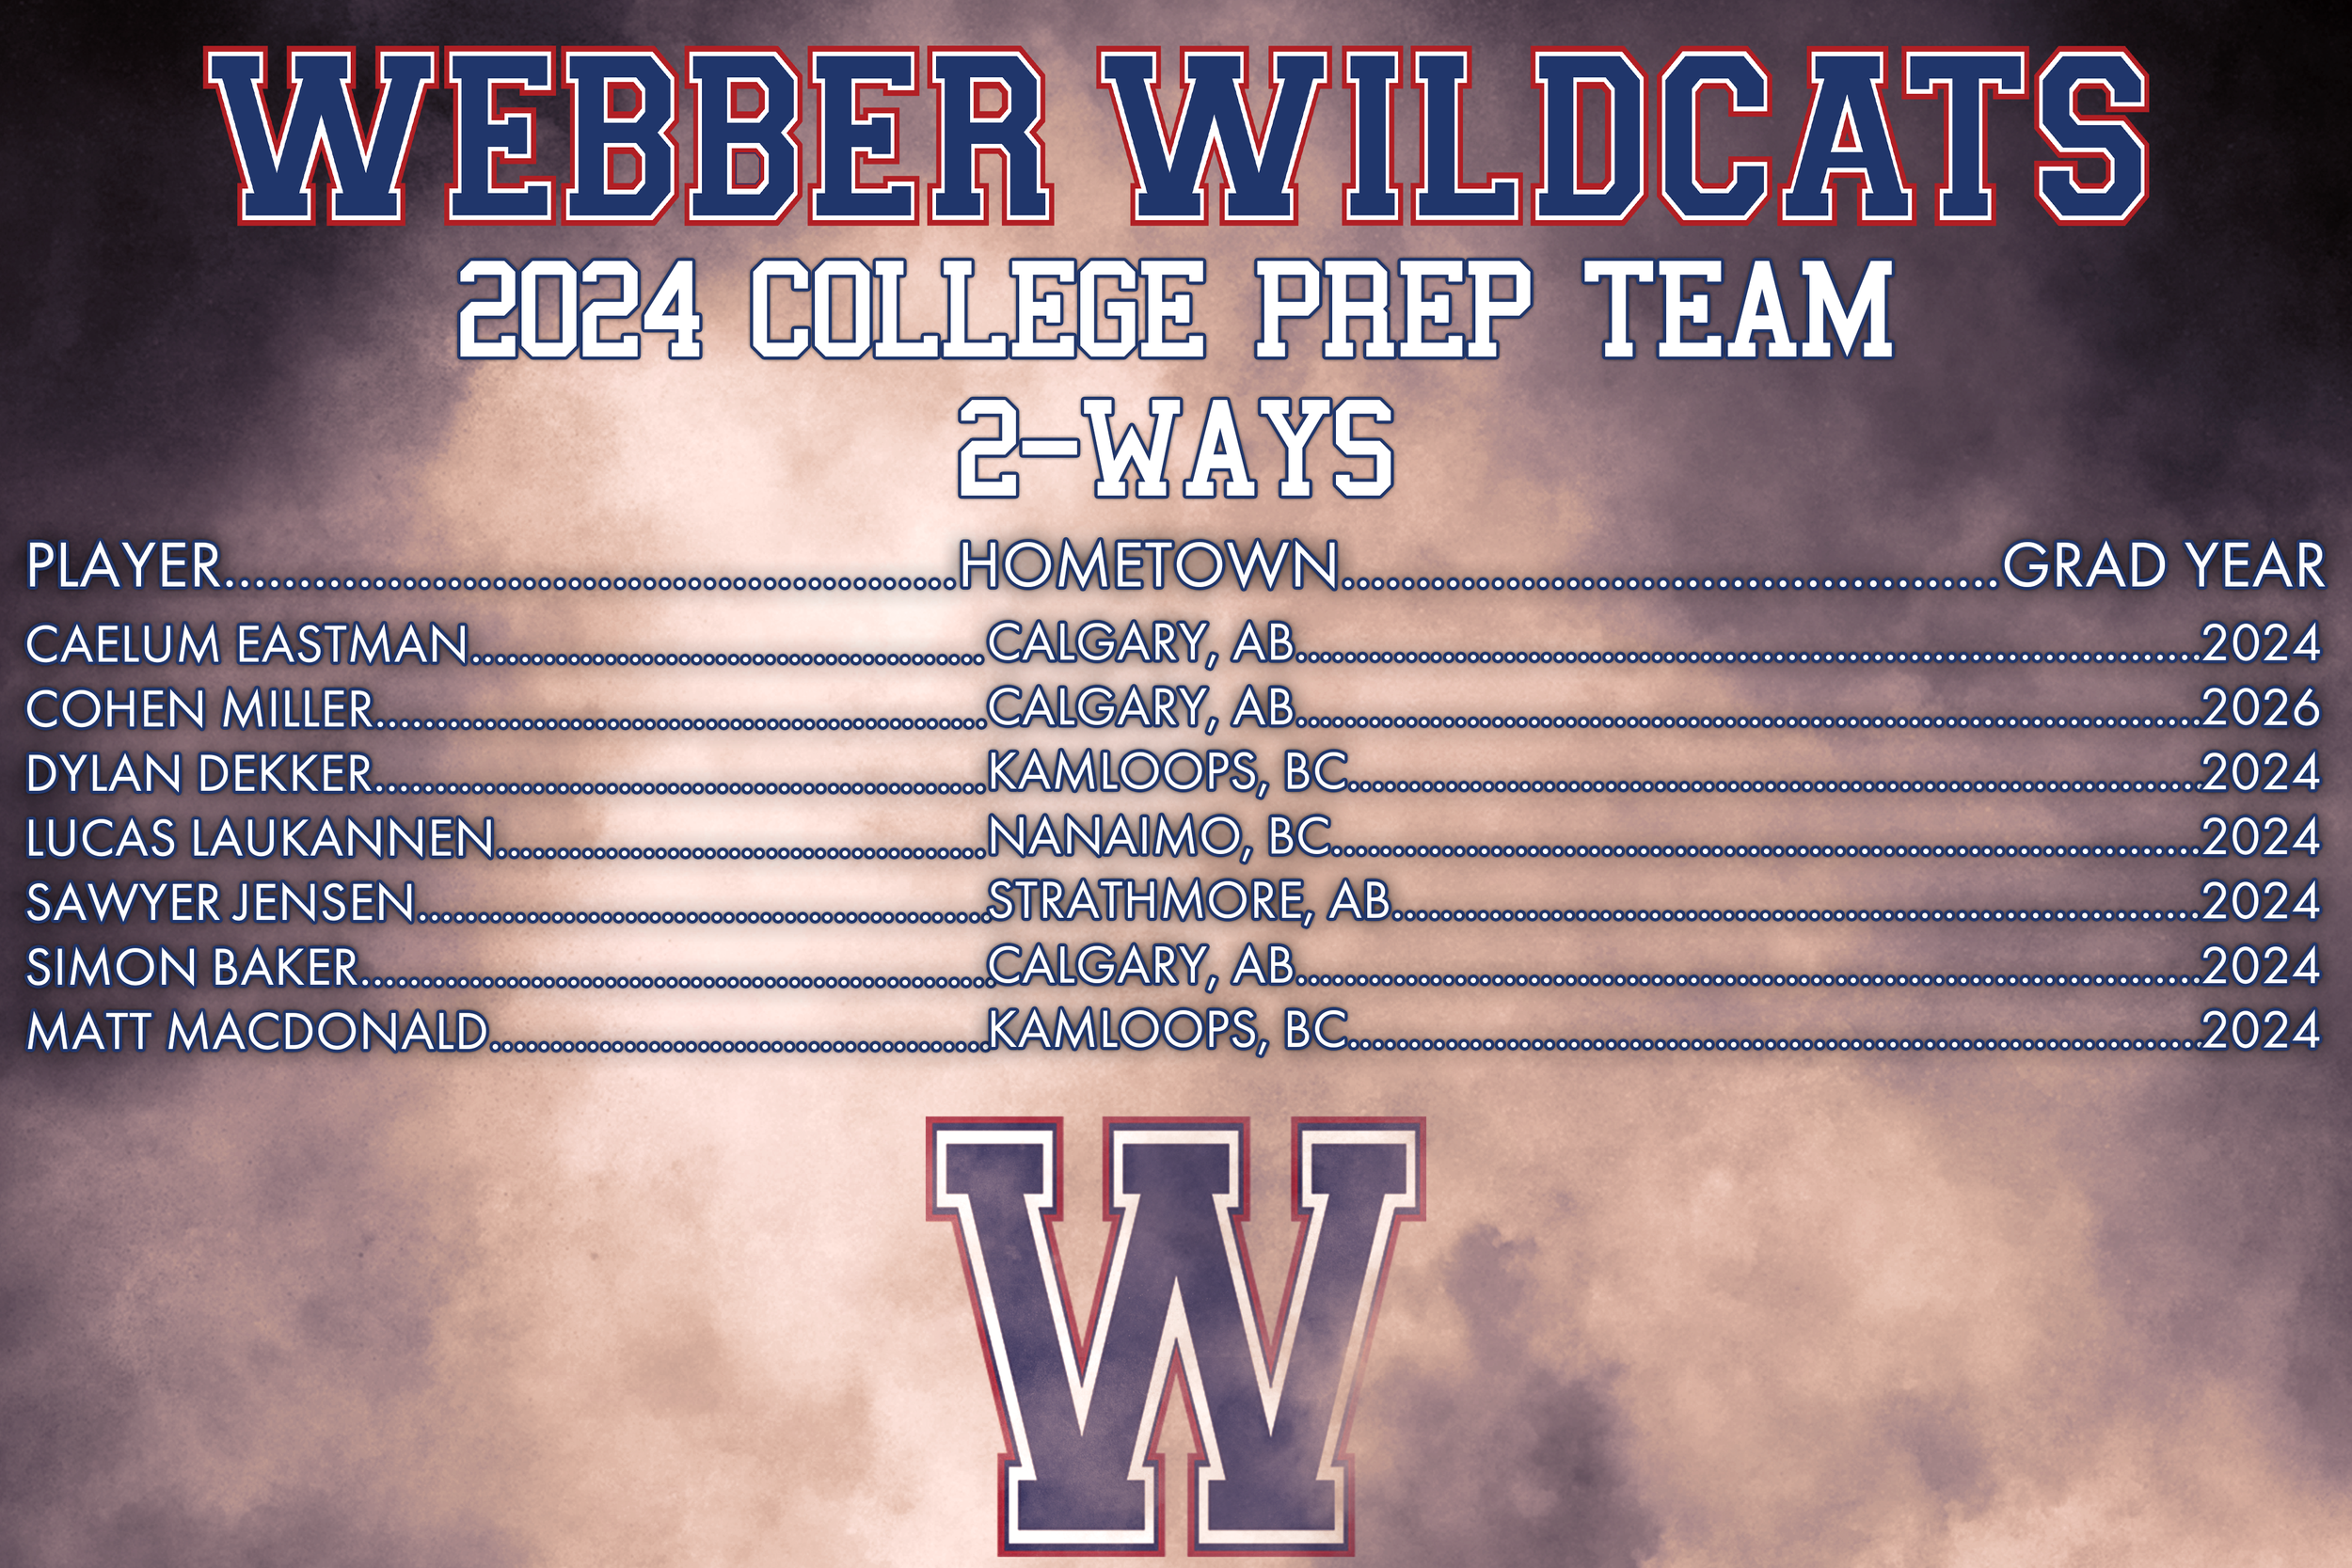 Webber Wildcats Prep 2-ways 2.png